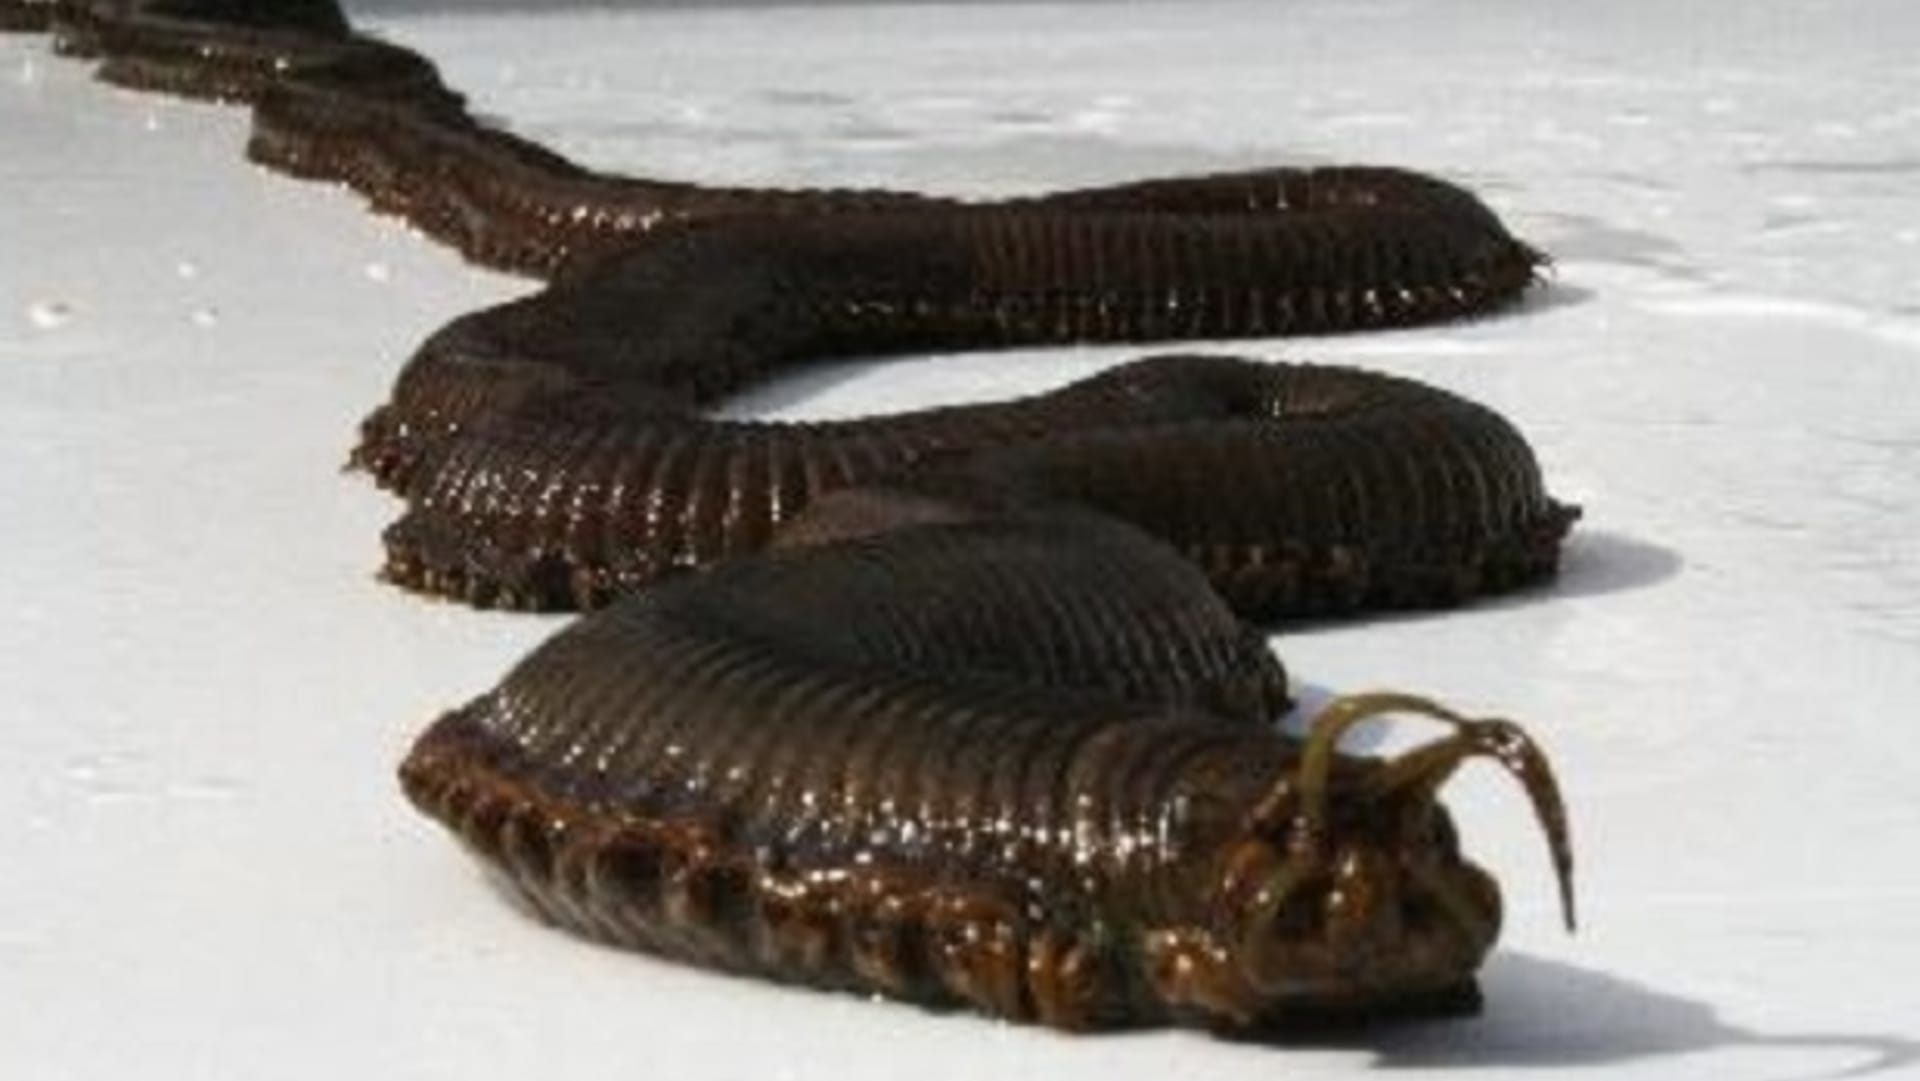 Bobbit worm